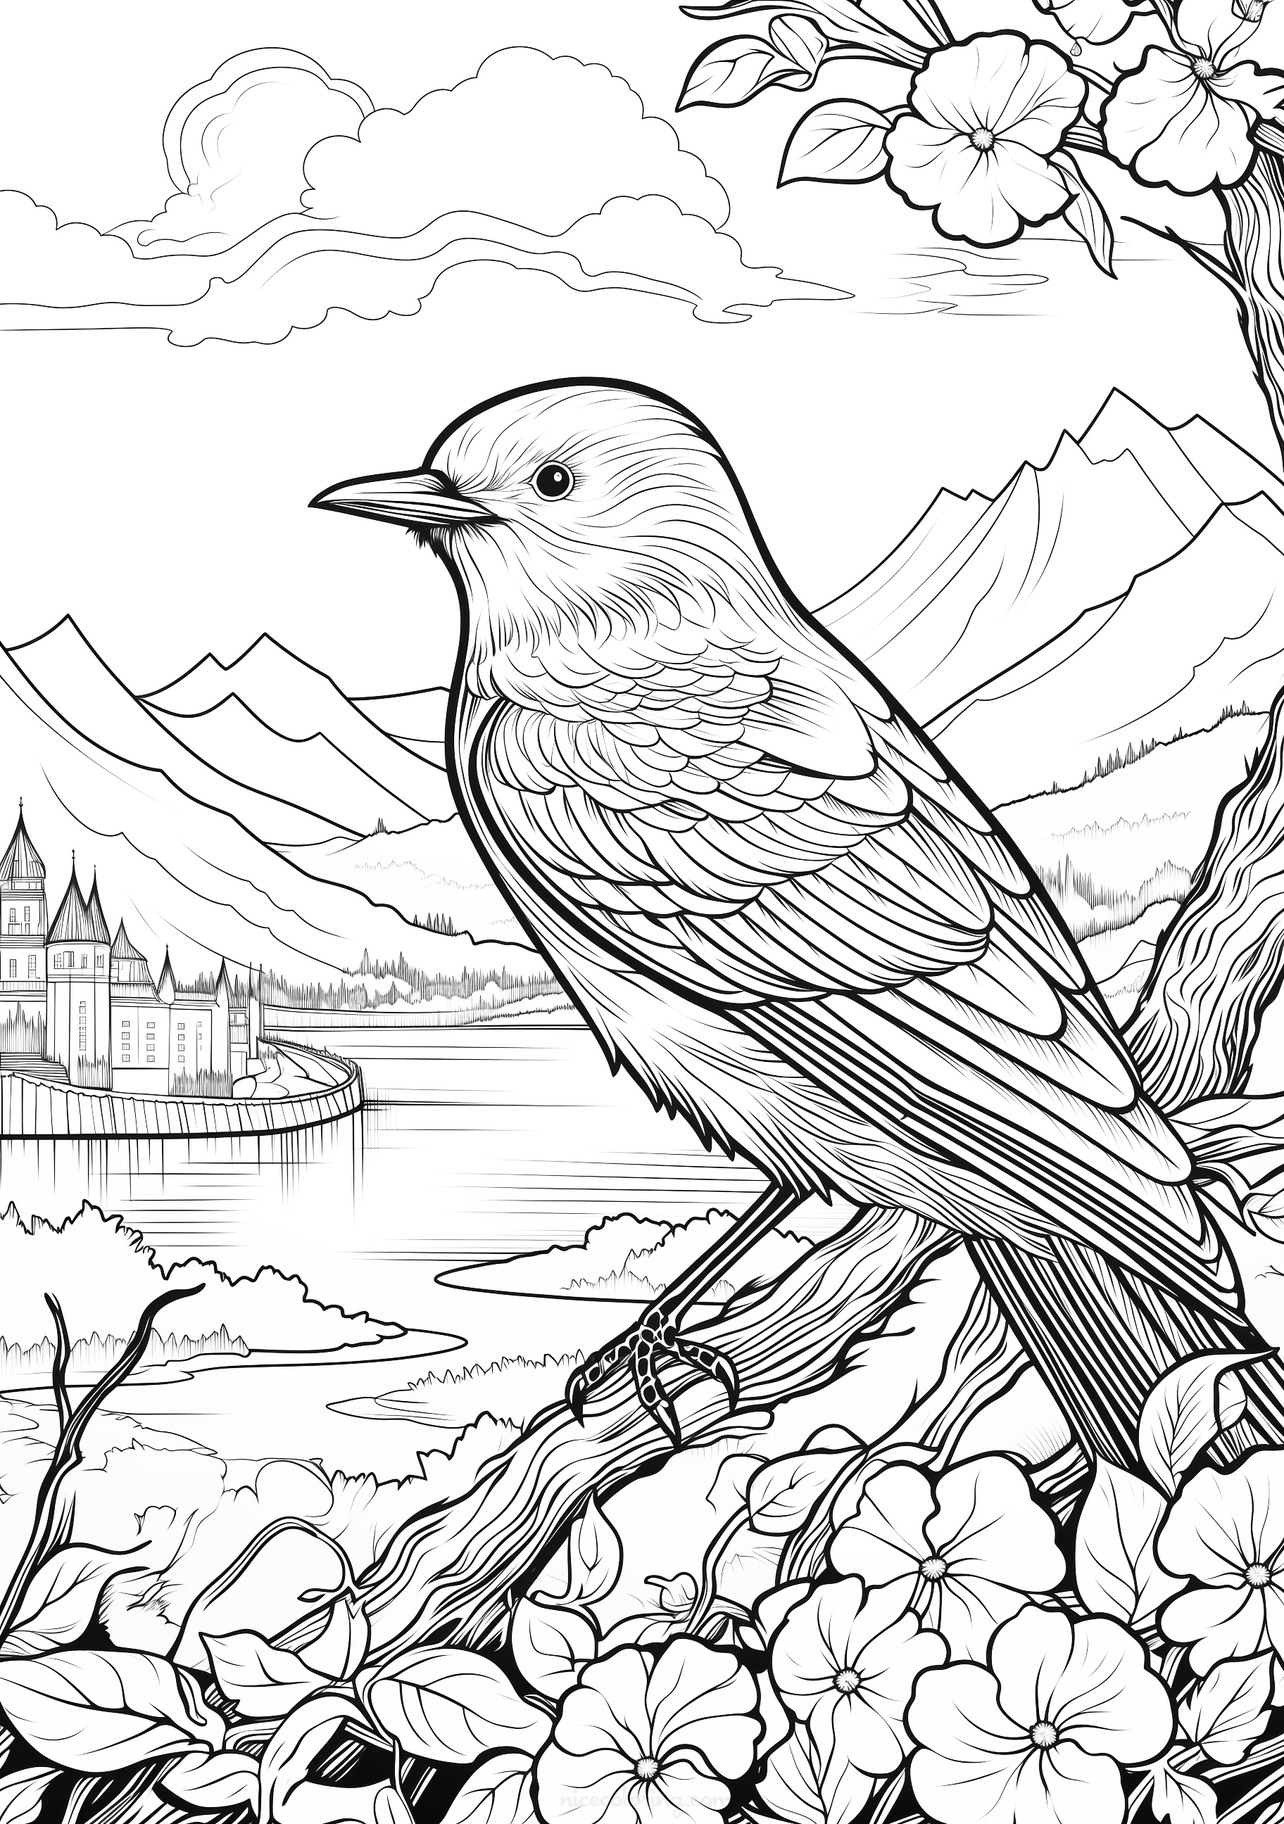 Desenho de um pássaro em um galho com flores e montanhas ao fundo para colorir